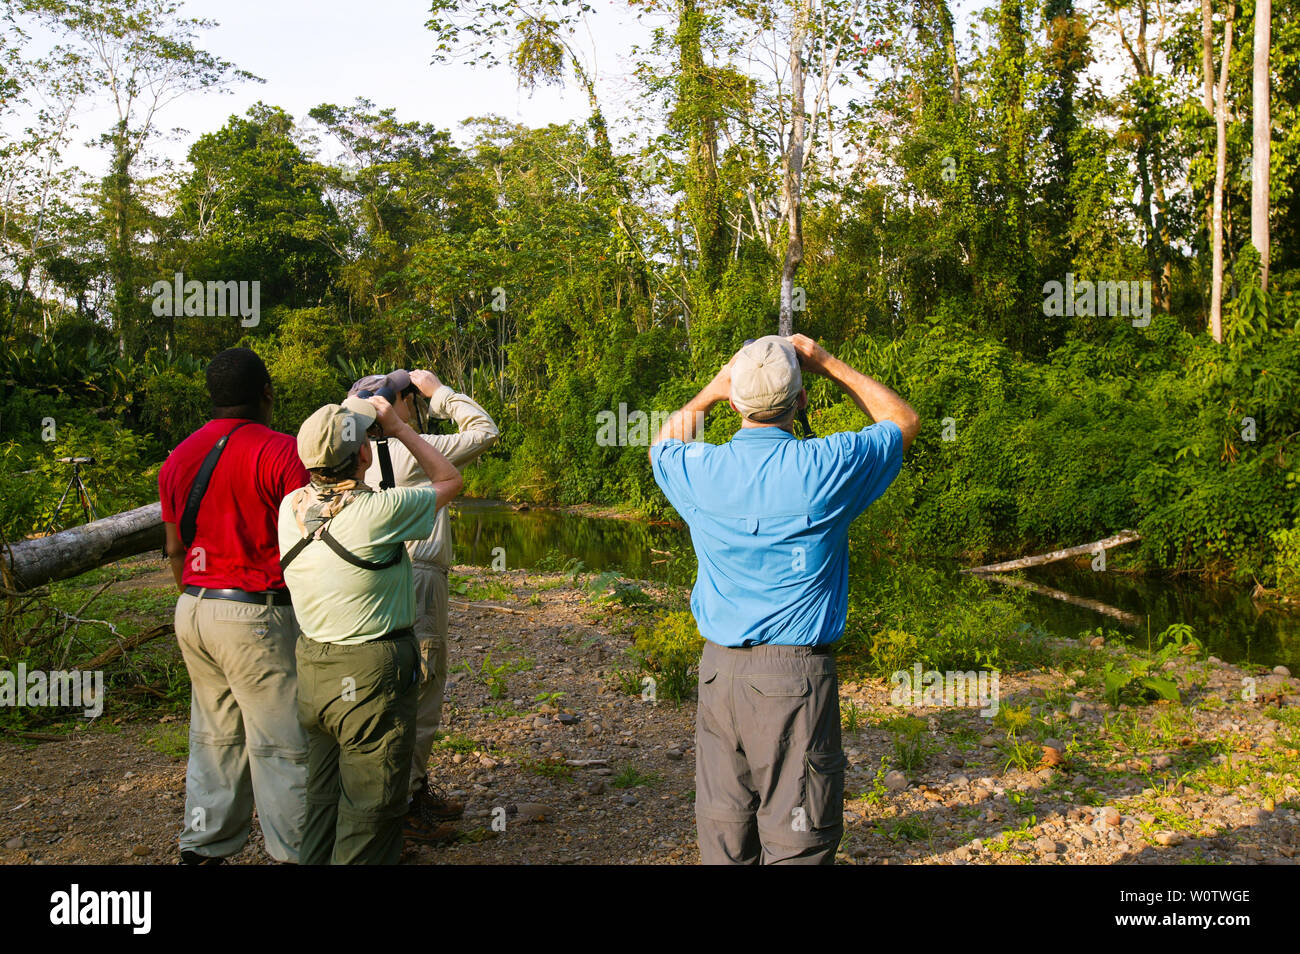 Gli amanti del birdwatching nella foresta pluviale vicino a Cana la stazione di campo nel Parco Nazionale del Darién, Repubblica di Panama. Cana è uno dei top ten birding spots nel mondo. Marzo, 2008. Foto Stock